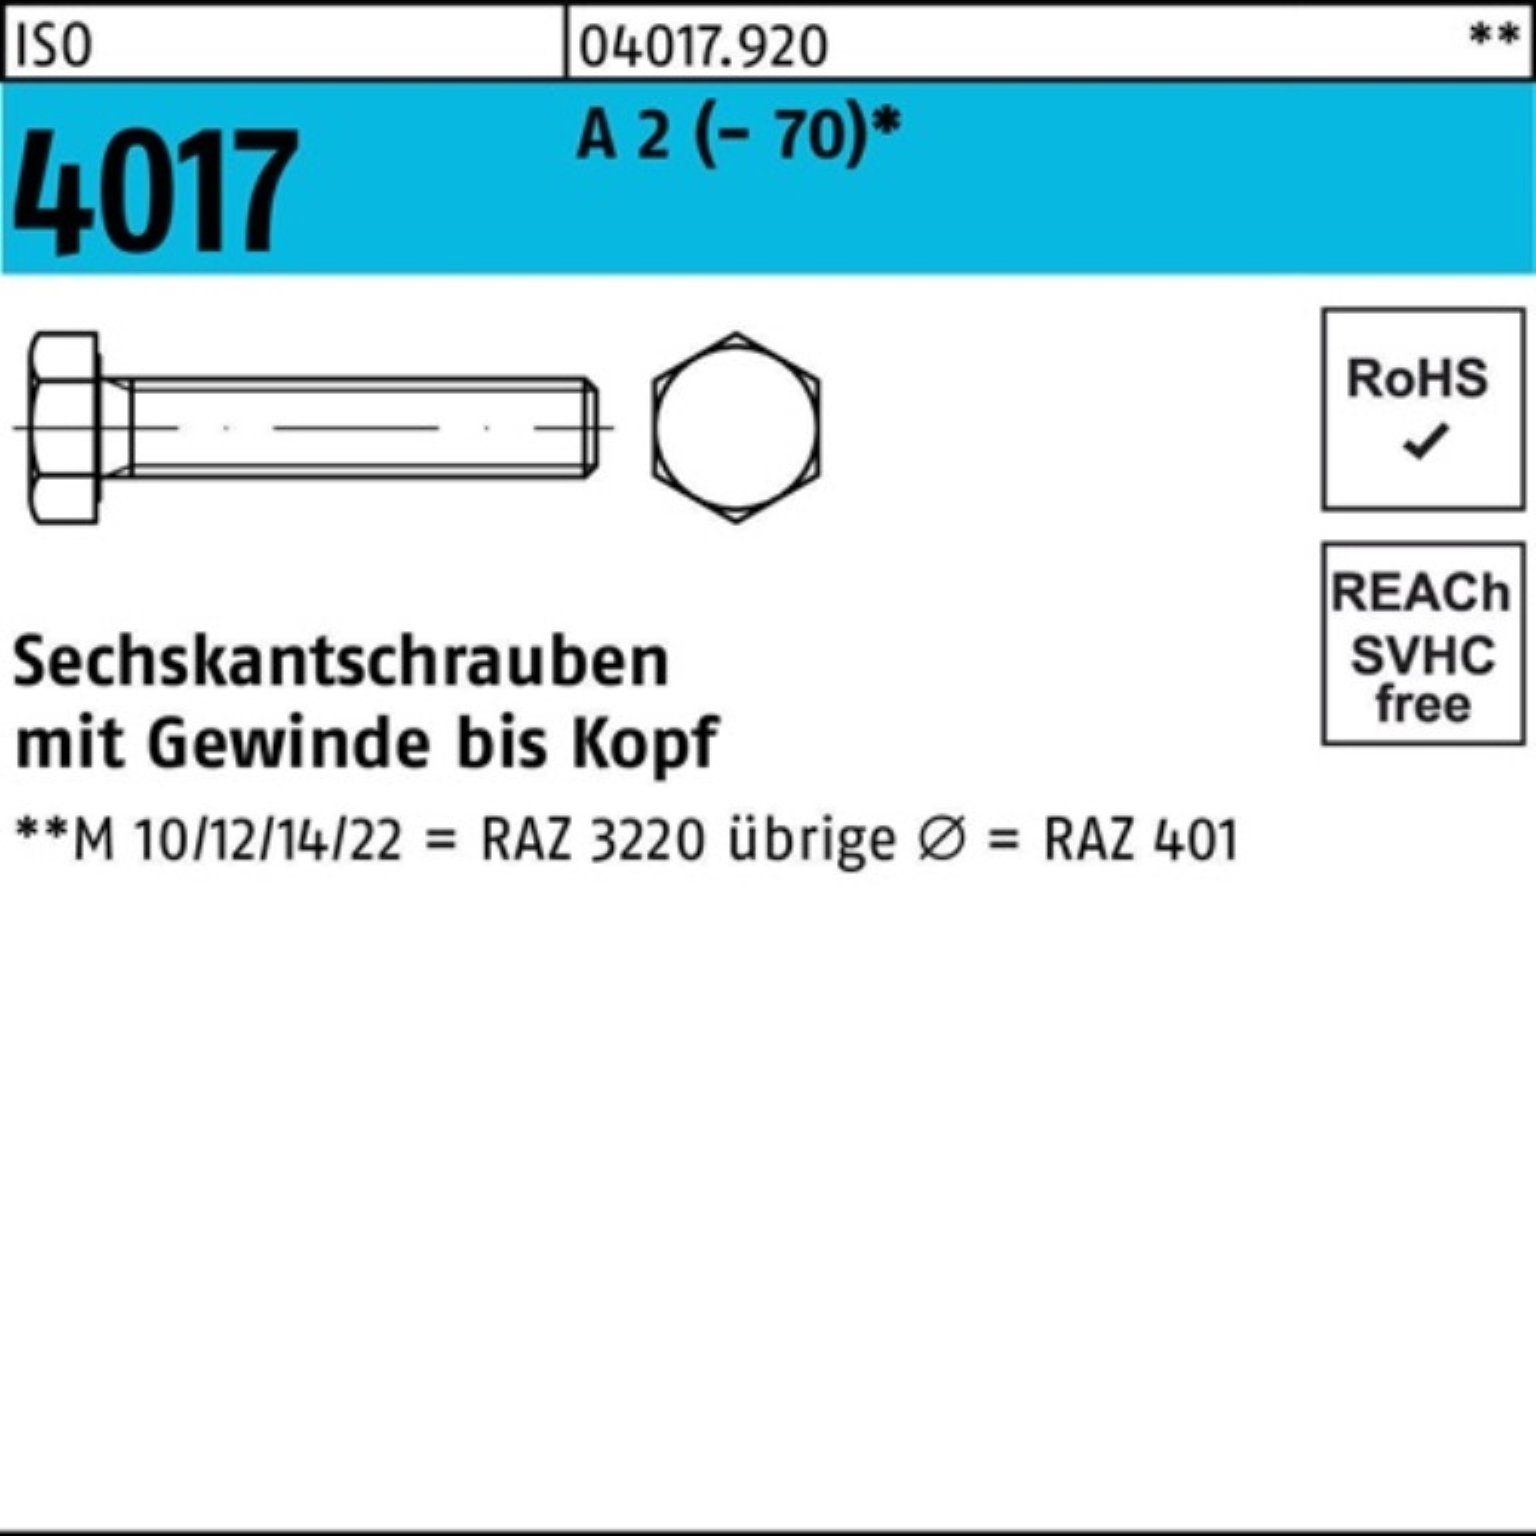 Sechskantschraube 200 8 4017 Bufab M4x 200er ISO ISO A VG 2 4017 Stück Pack Sechskantschraube